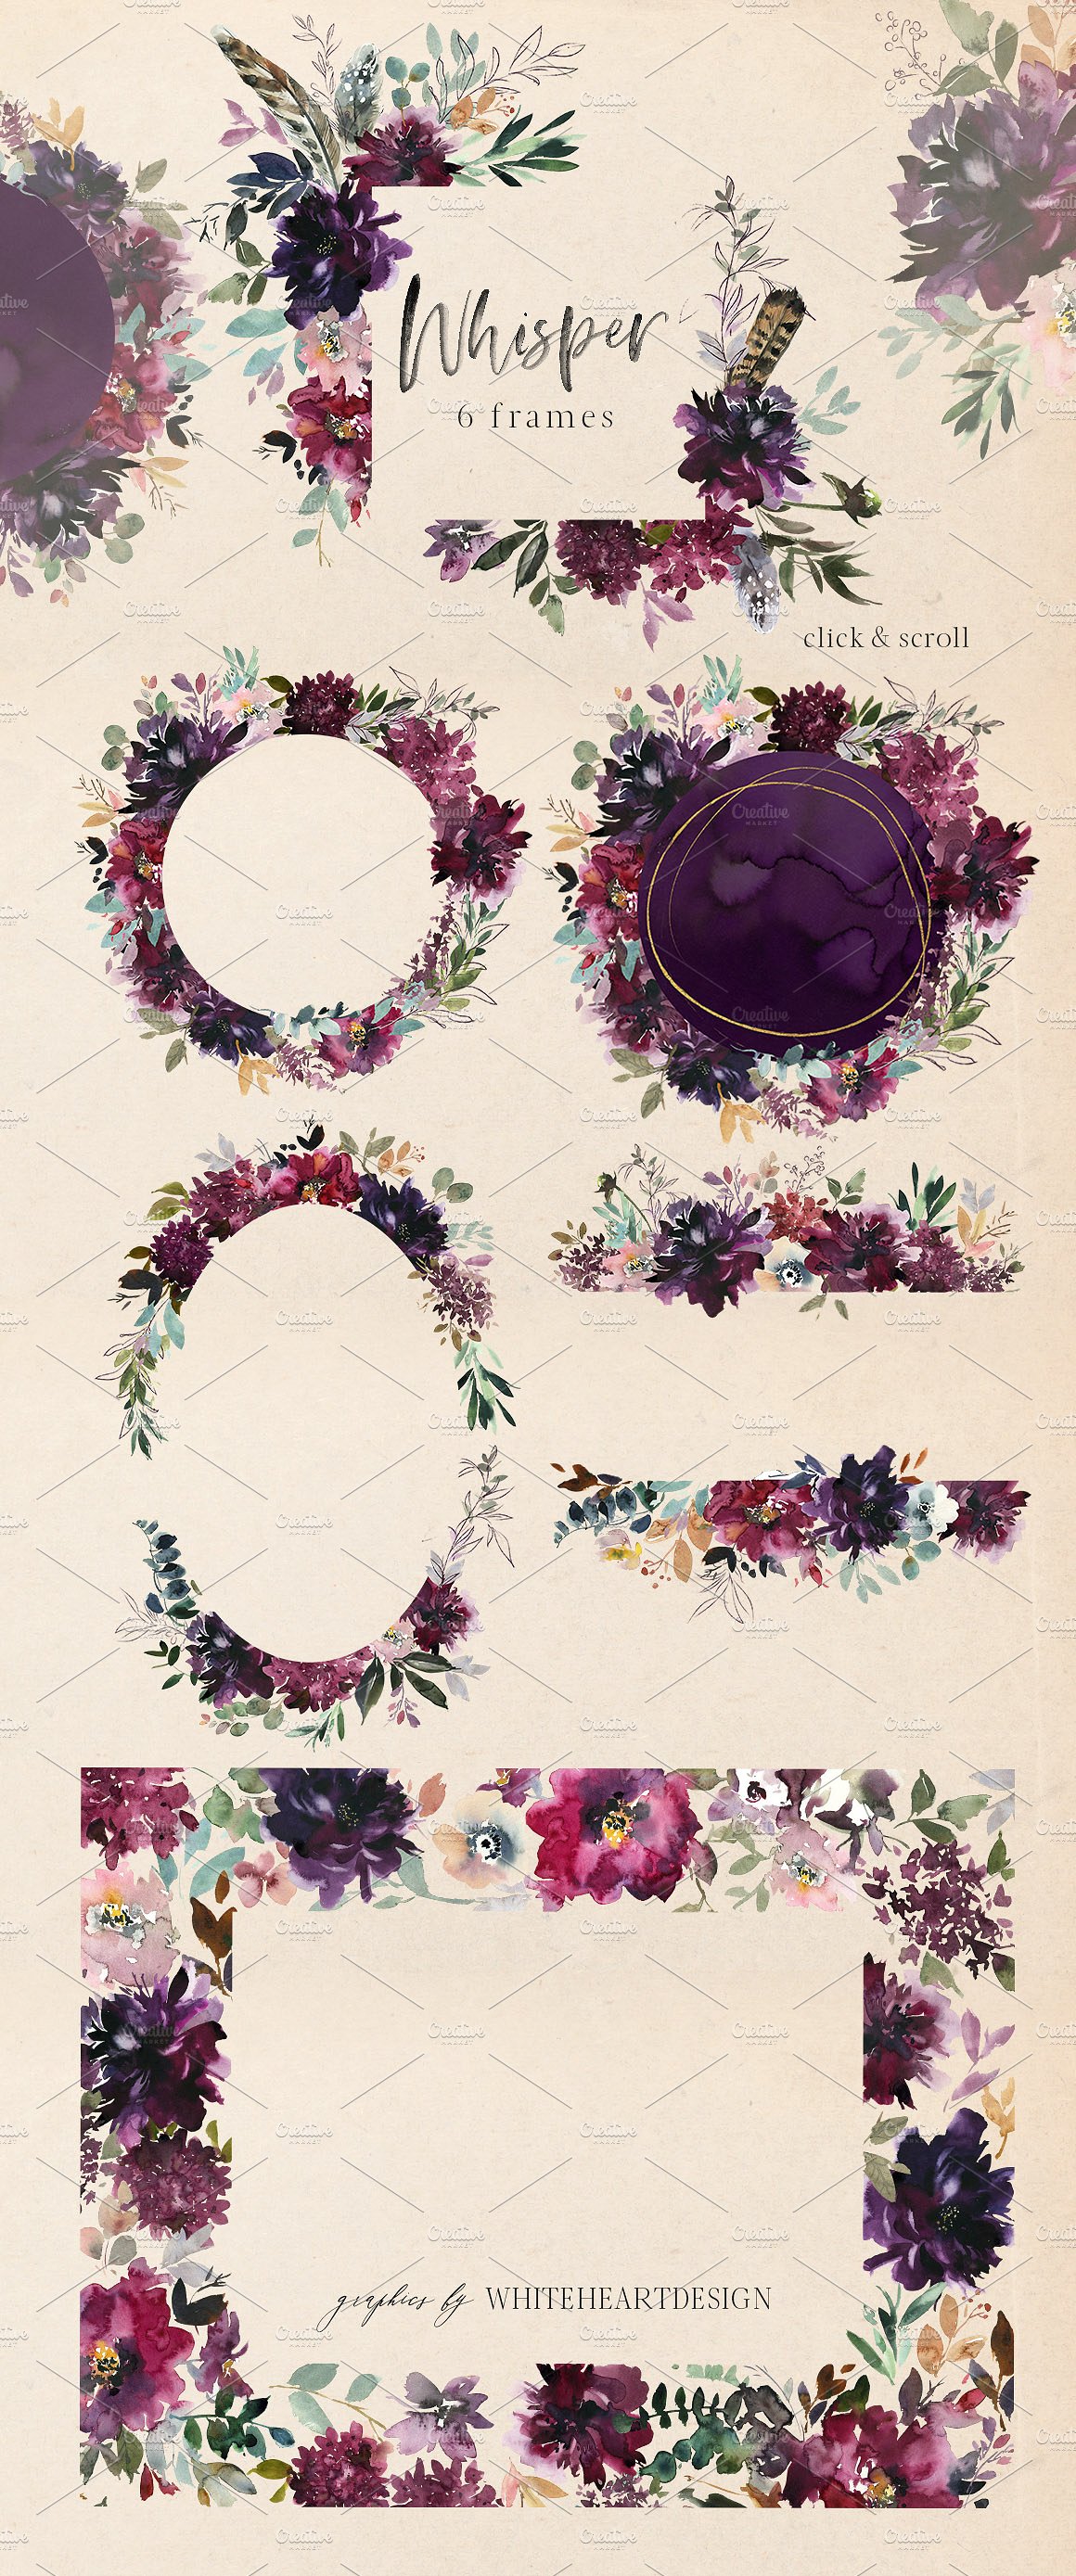 浪漫暗色调水彩花卉剪贴画 Whisper Watercolor Floral Clipart插图(5)